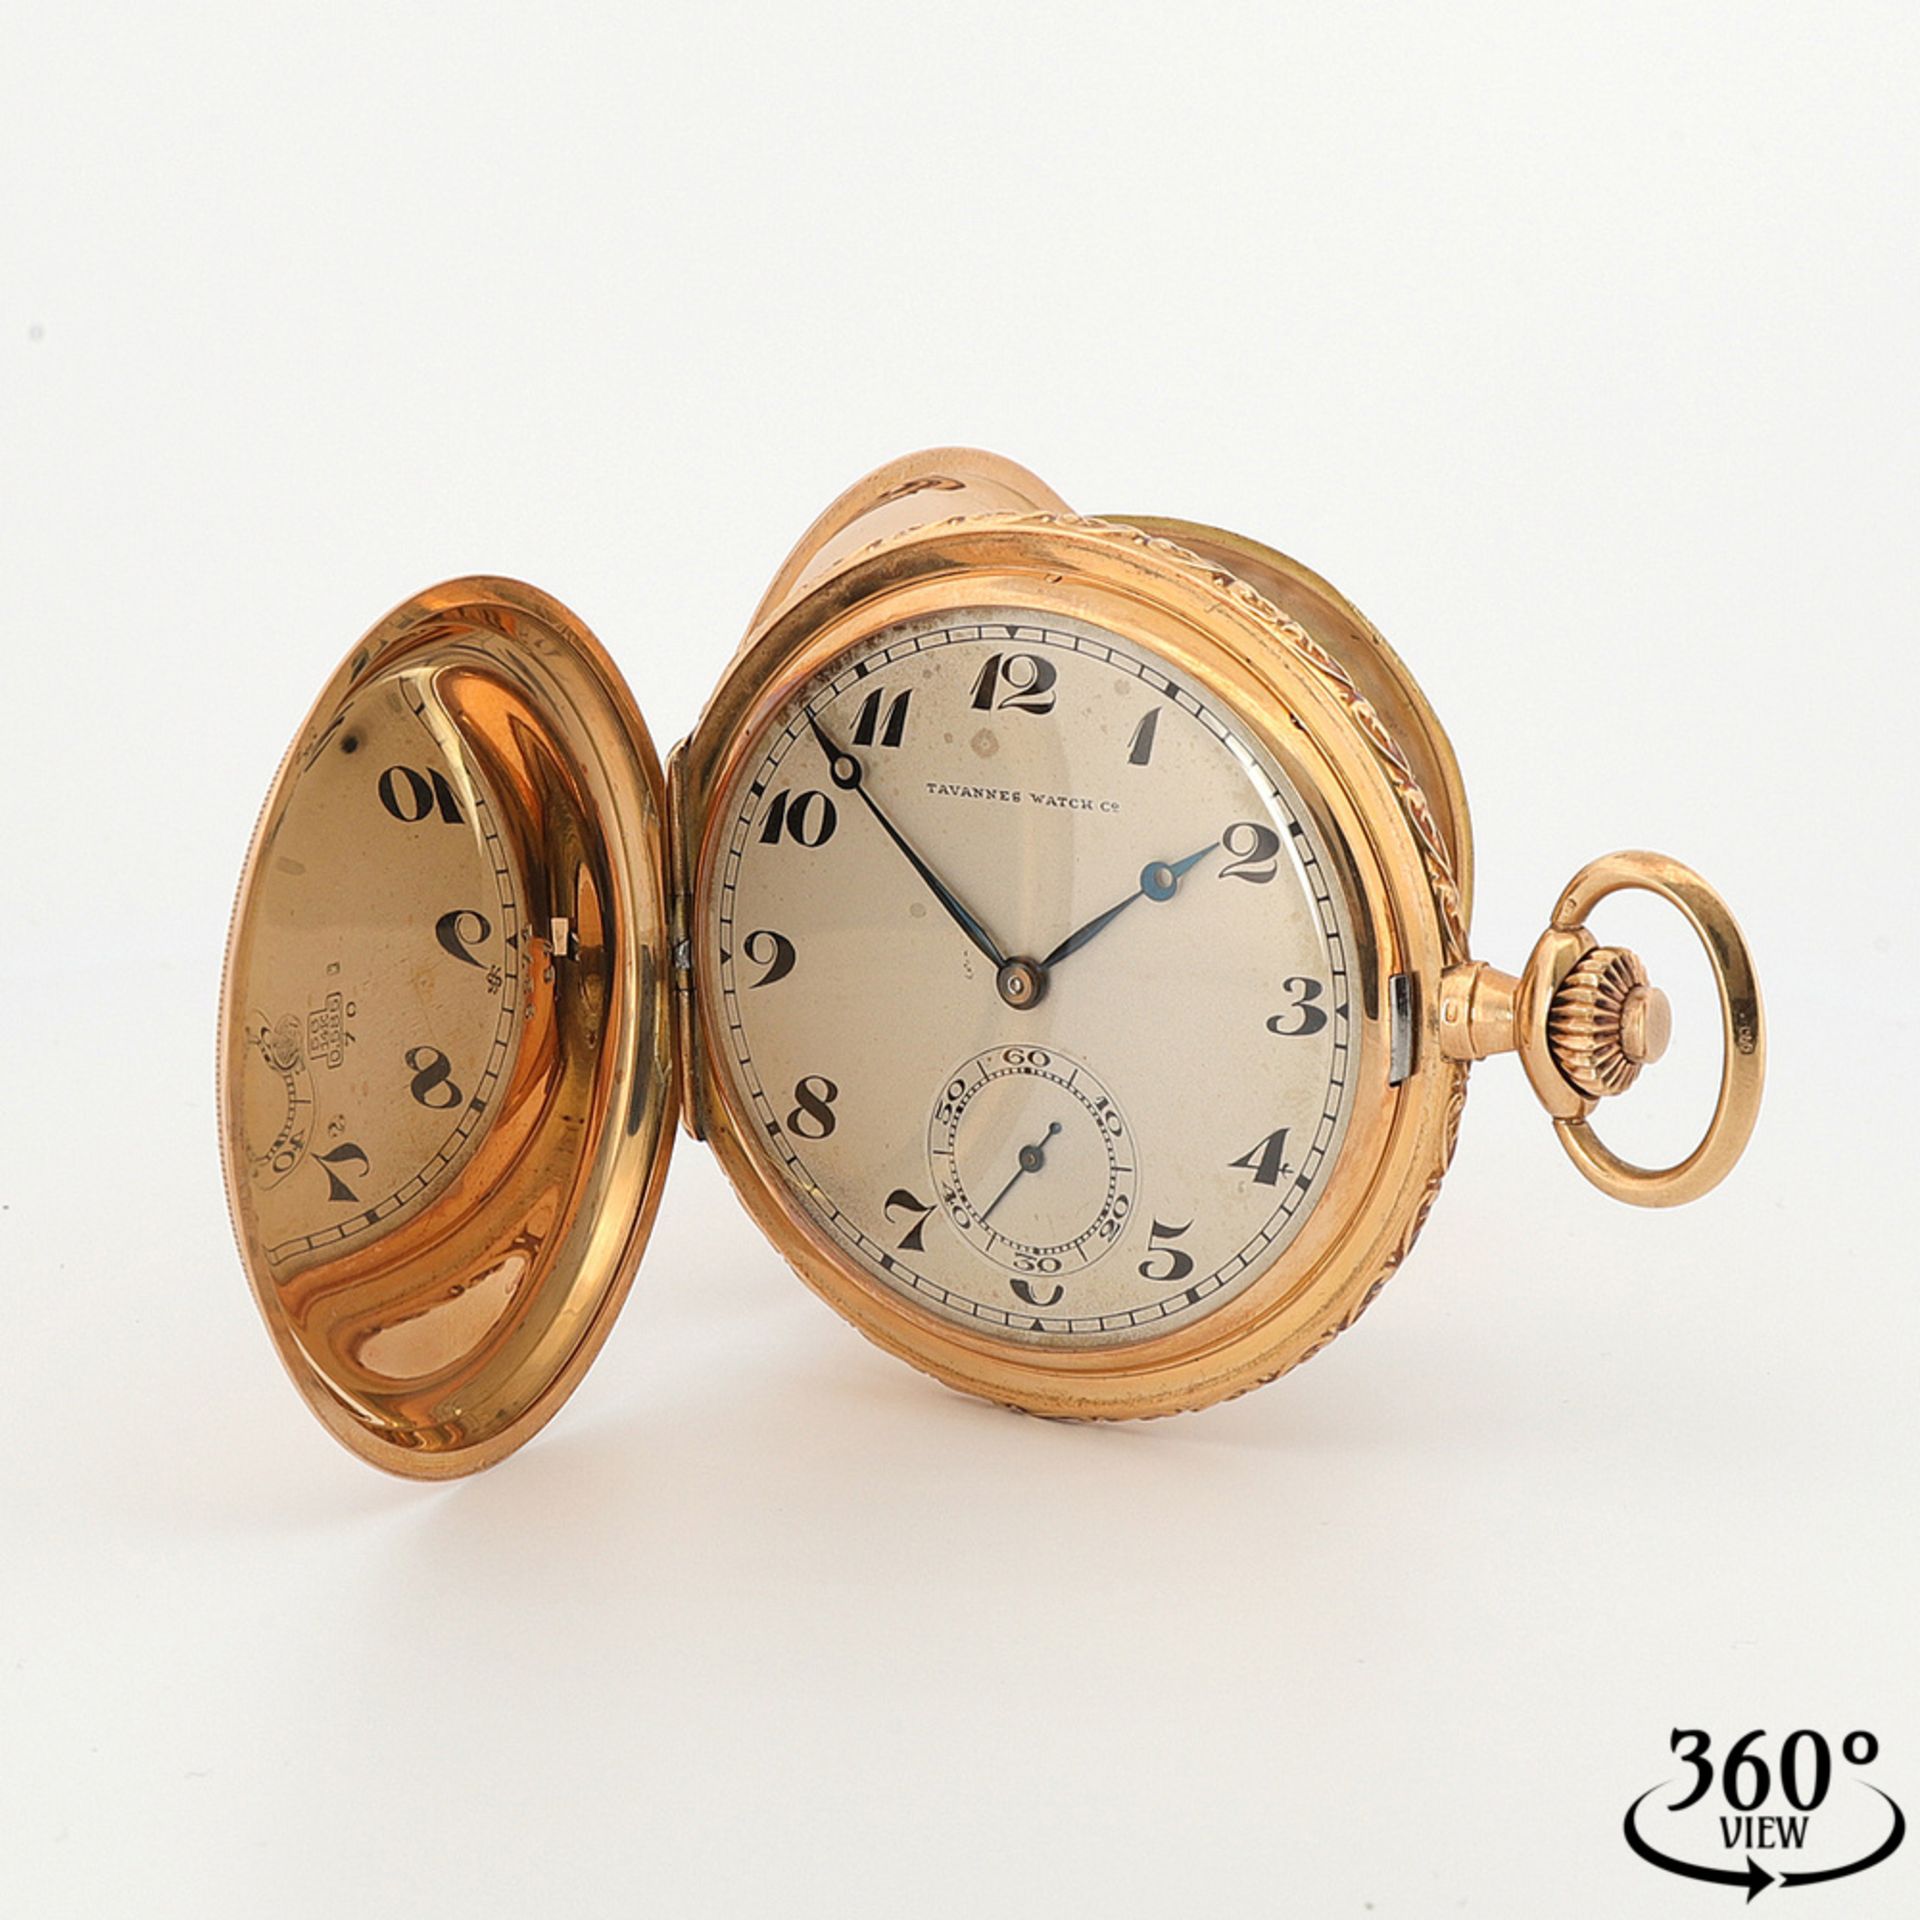 Tavannes Watch Co. gold savonnette / pocket watch, circa 1920